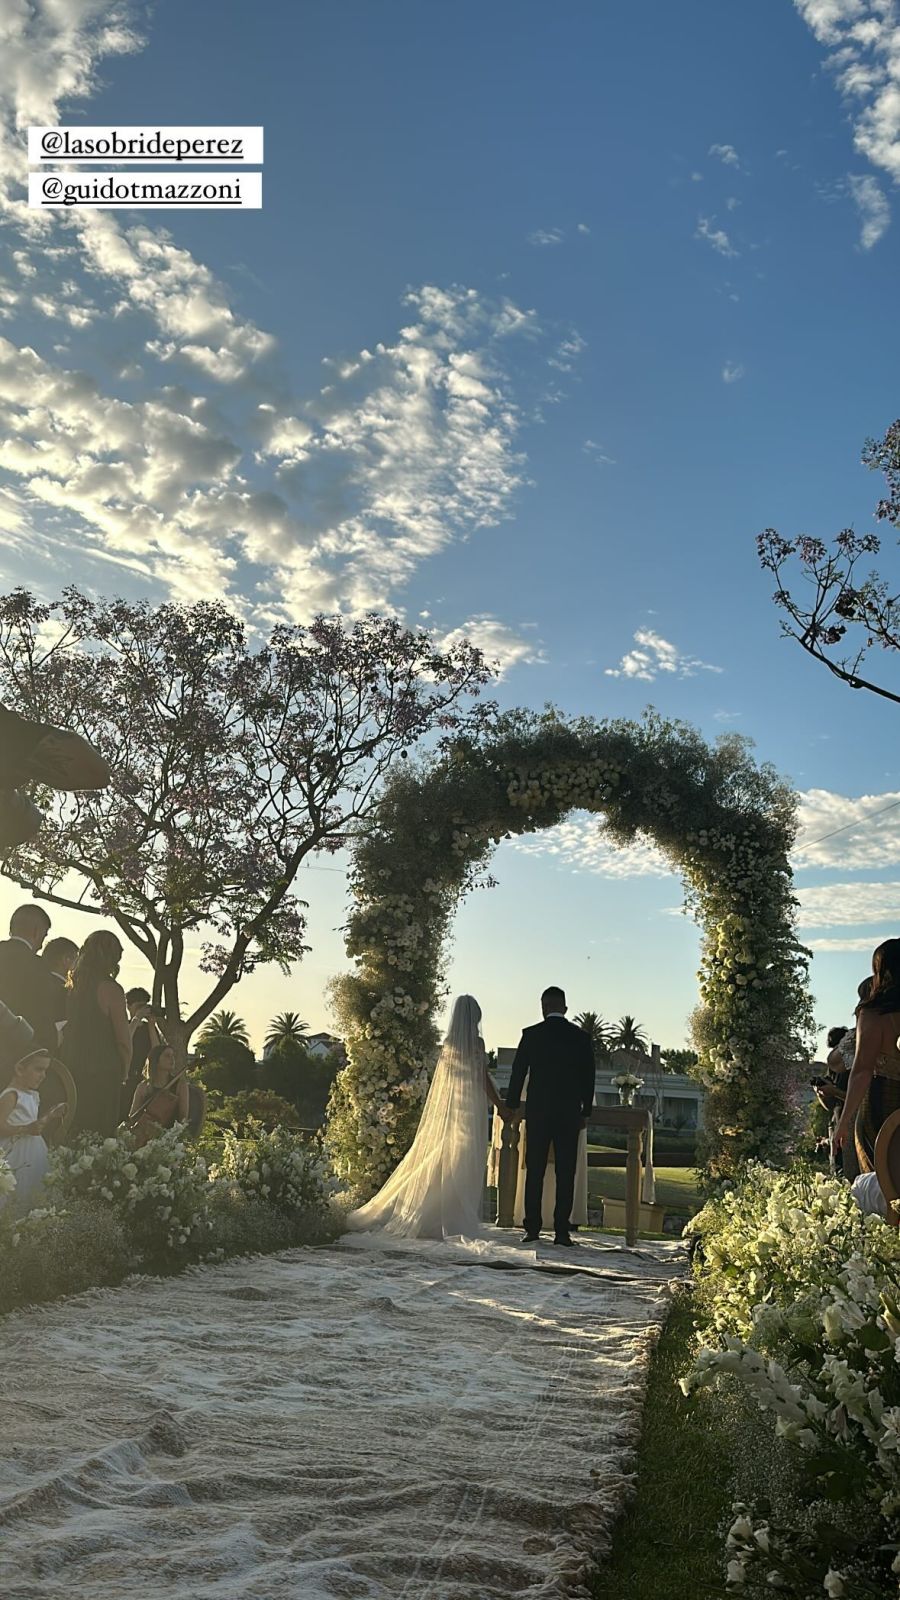 Se casó Sol Pérez con Guido Mazzoni en una celebración al aire libre